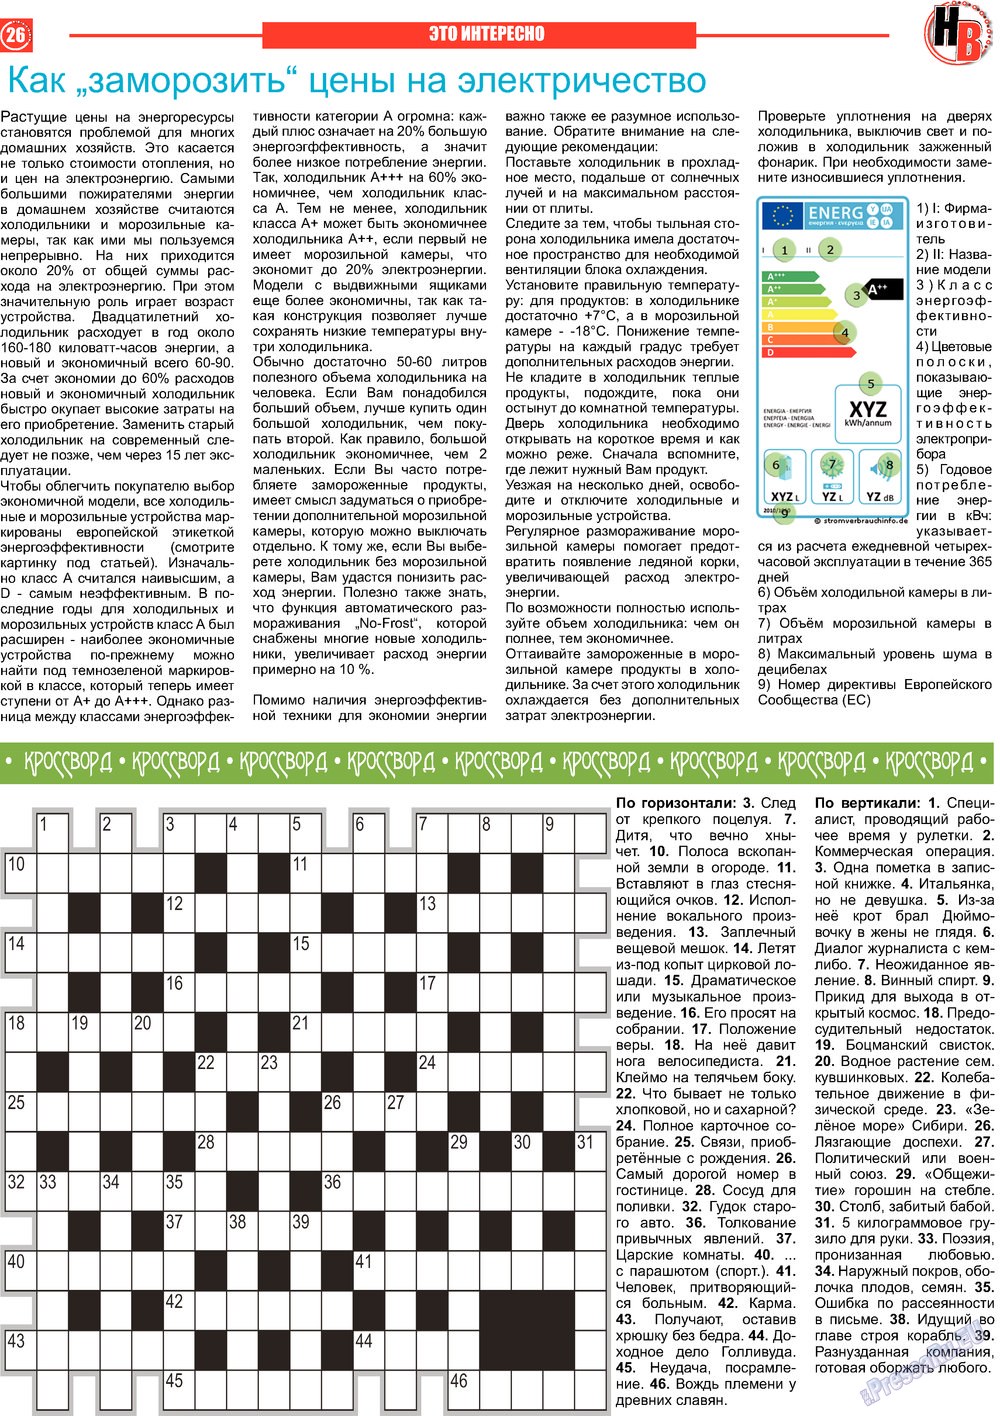 Наше время, газета. 2013 №4 стр.26